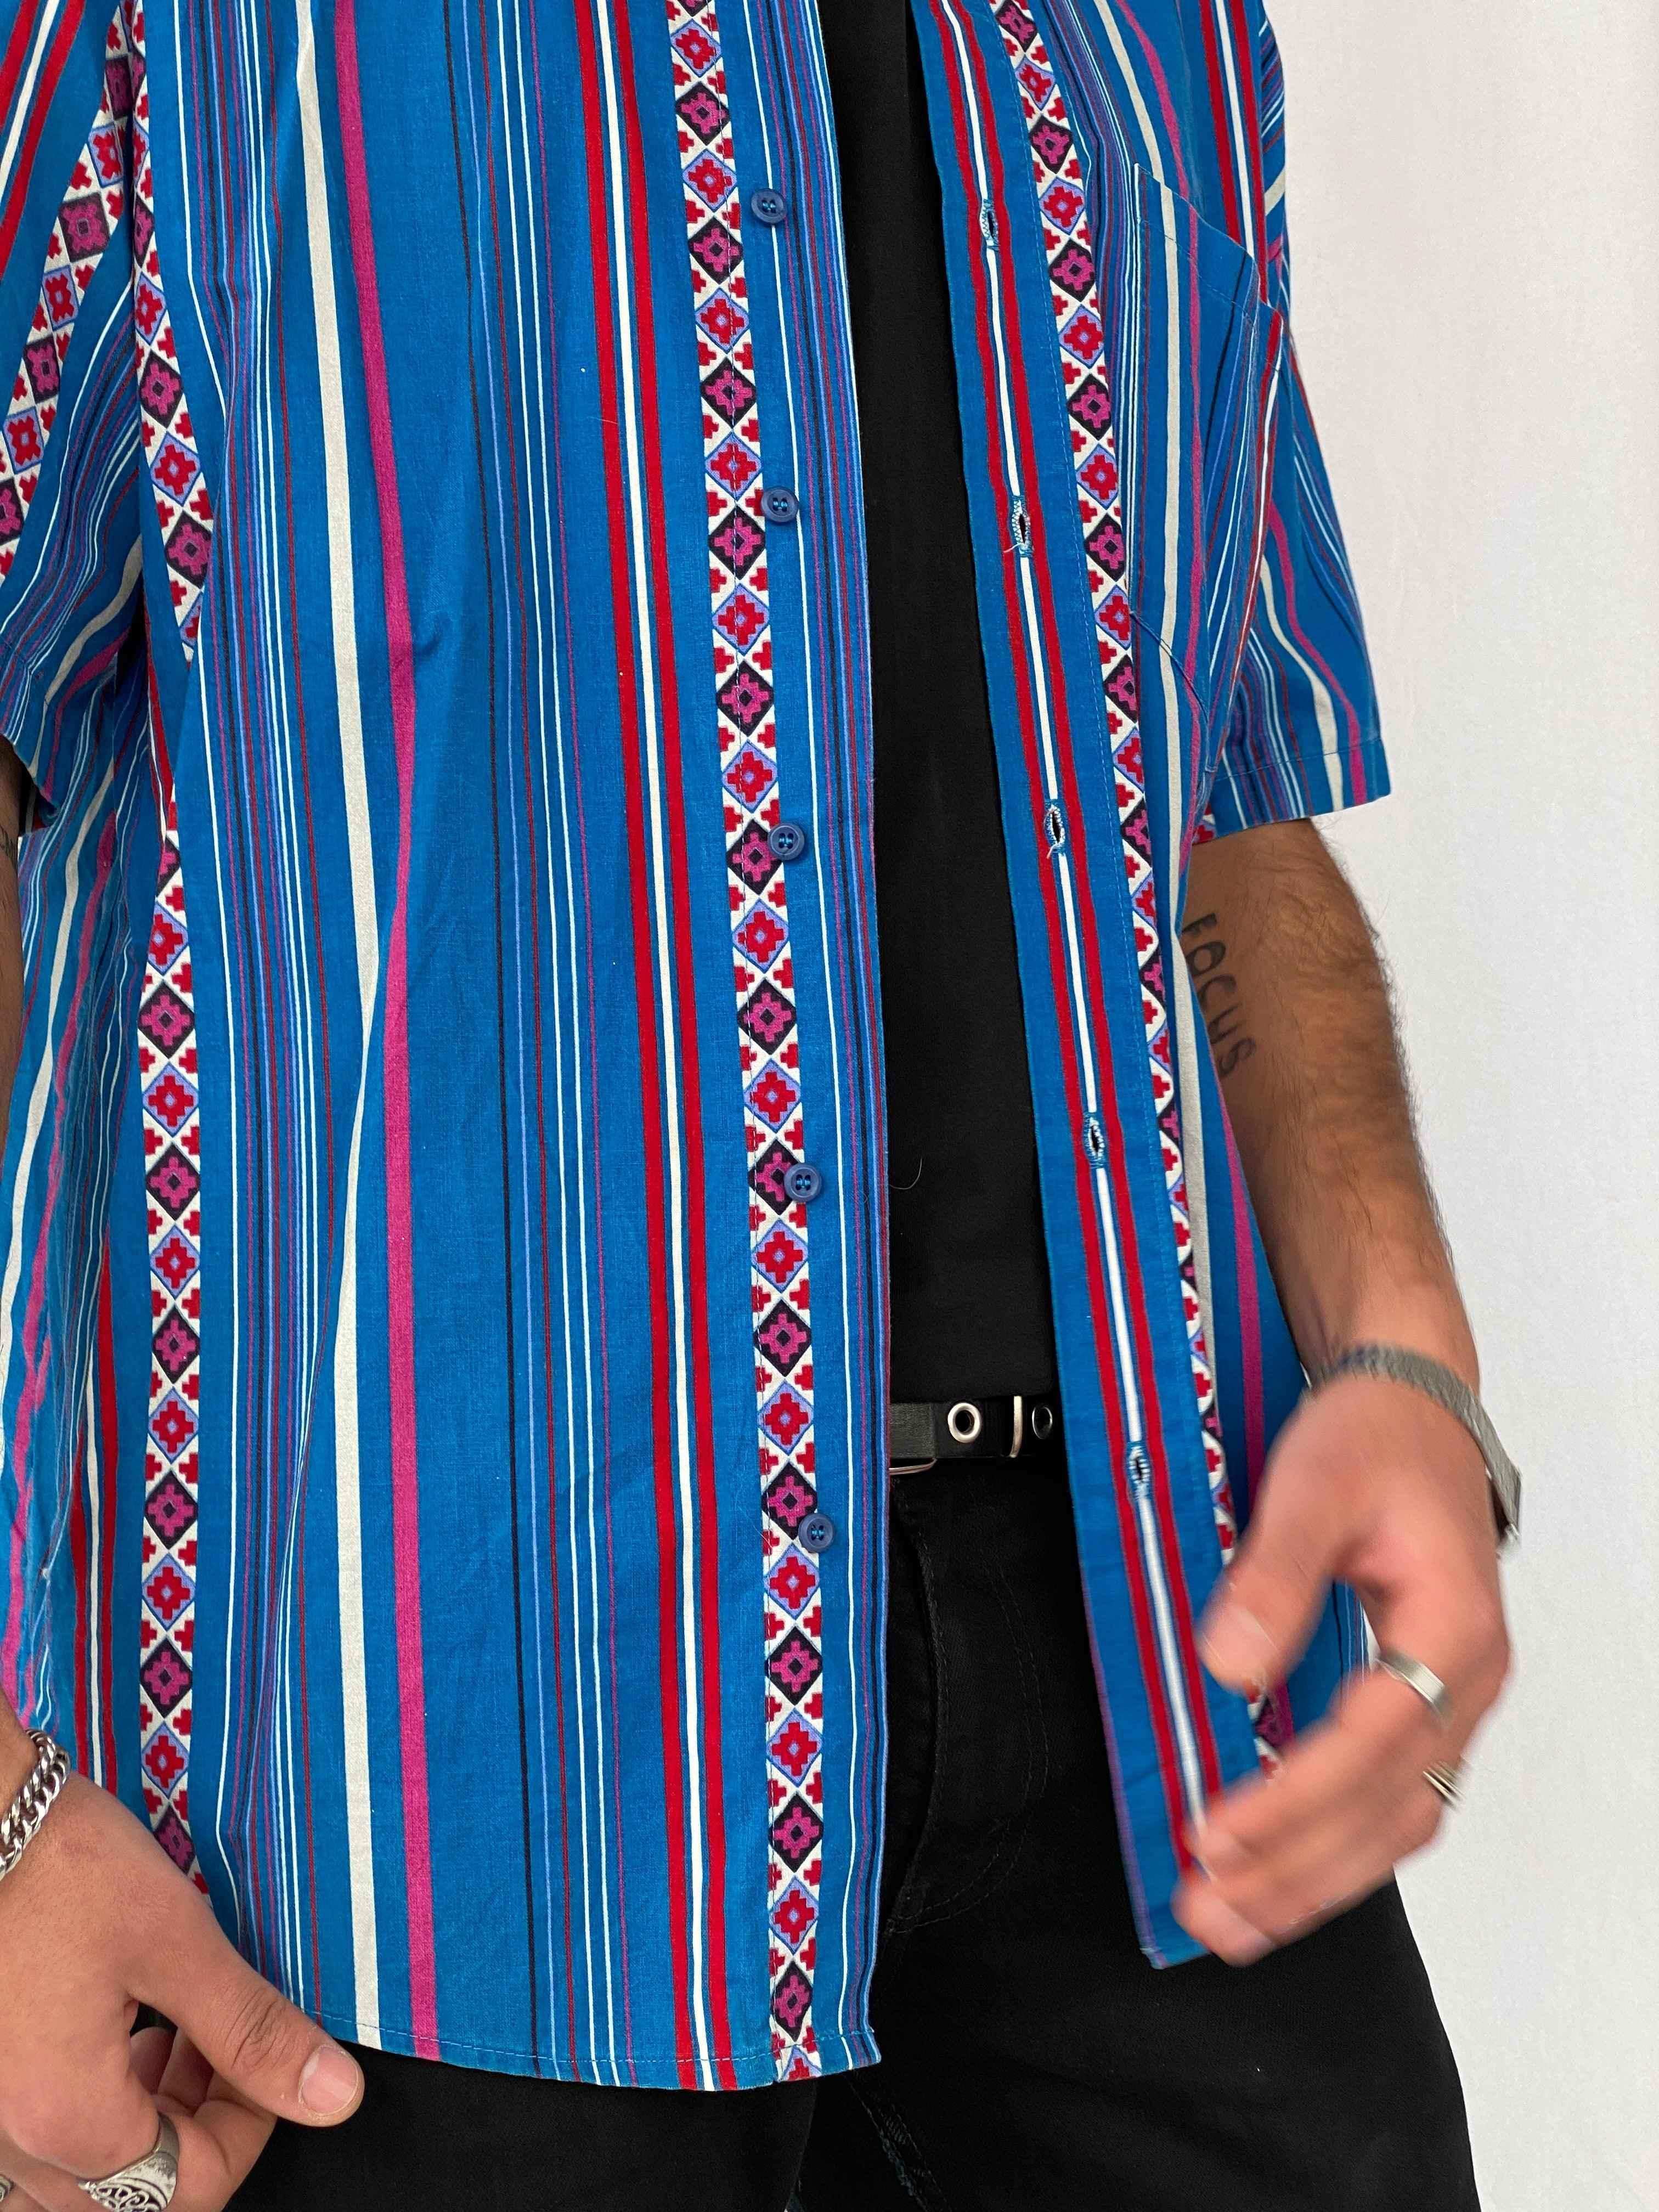 Vintage Frank Printed Shirt - Balagan Vintage Half Sleeve Shirt 90s, half sleeve shirt, men